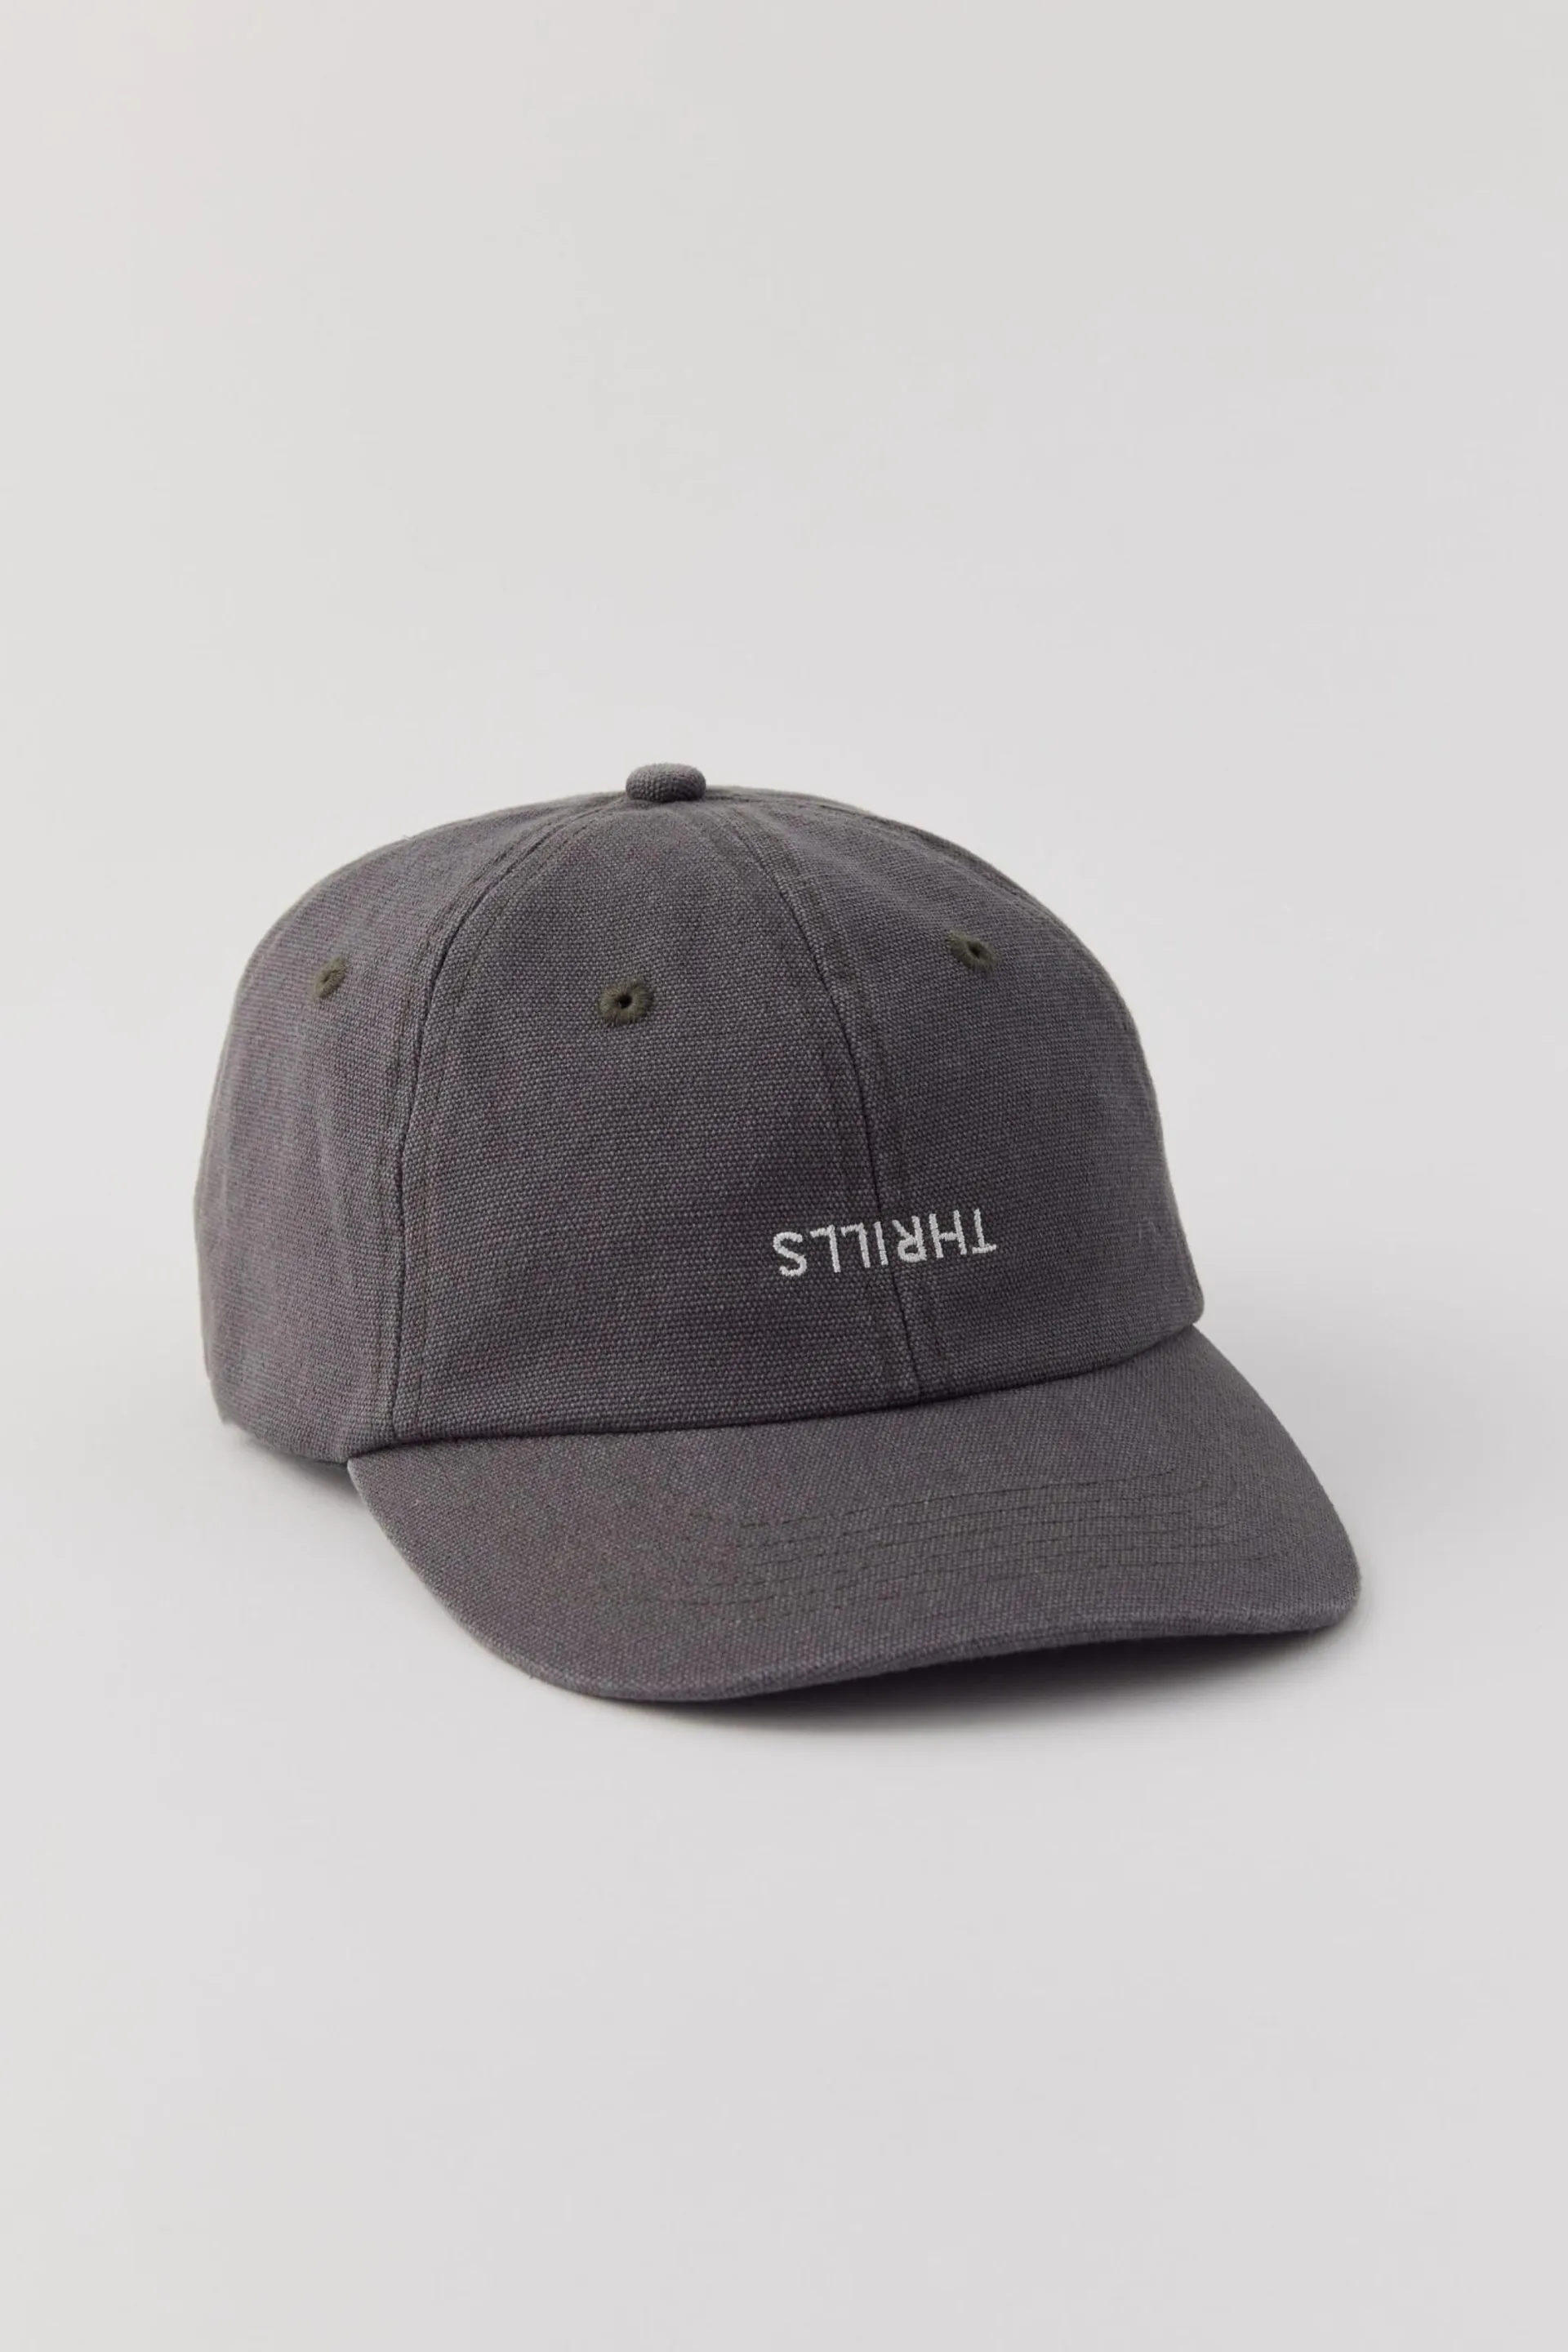 THRILLS UO Exclusive Minimal Thrills Washed Canvas Hat